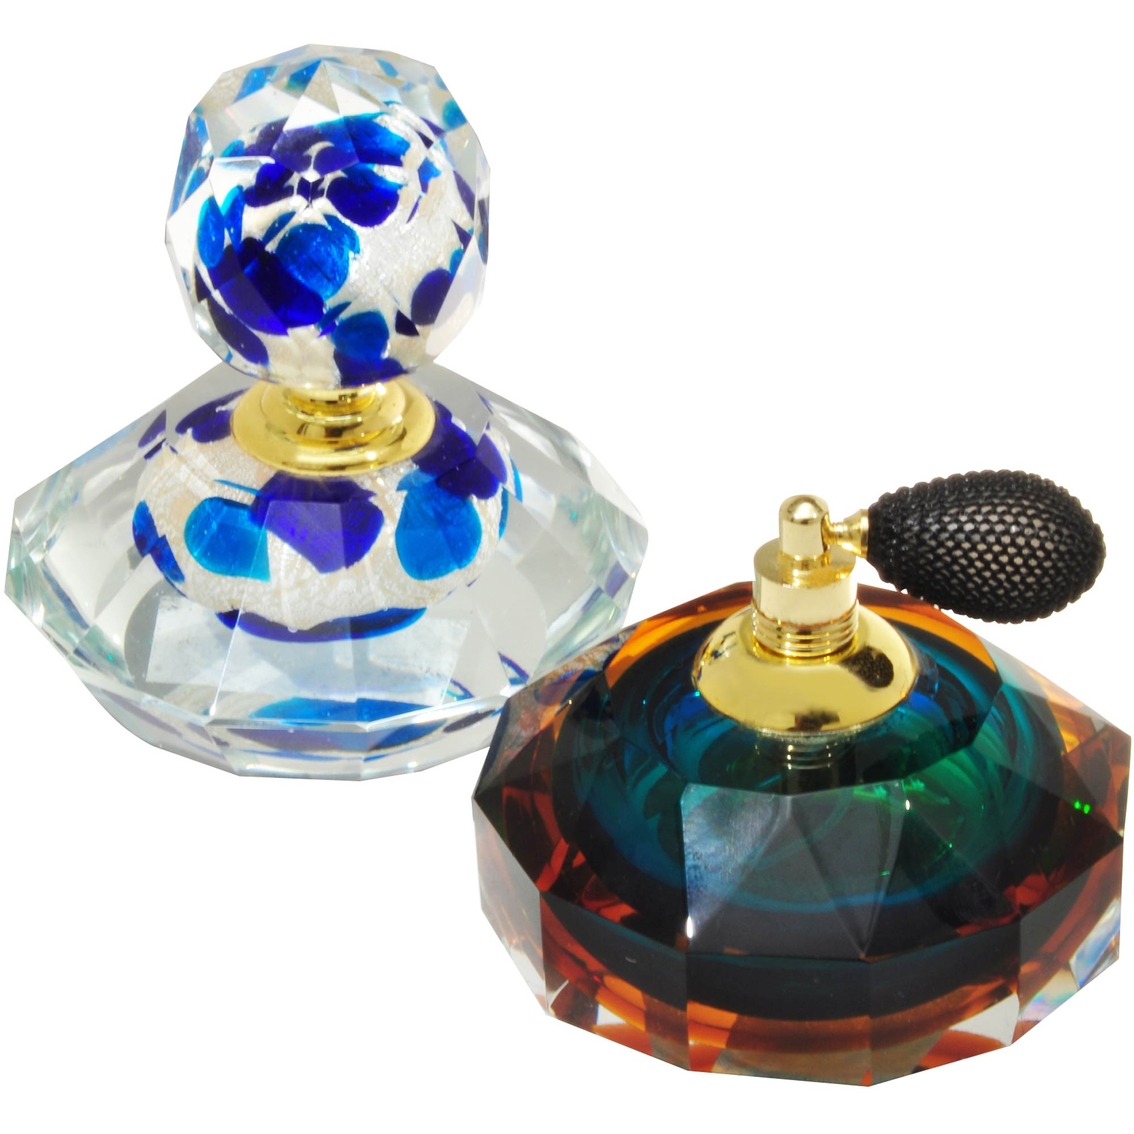 Dale Tiffany Columbia Perfume Bottle 2 pc. Set - Image 1 of 2